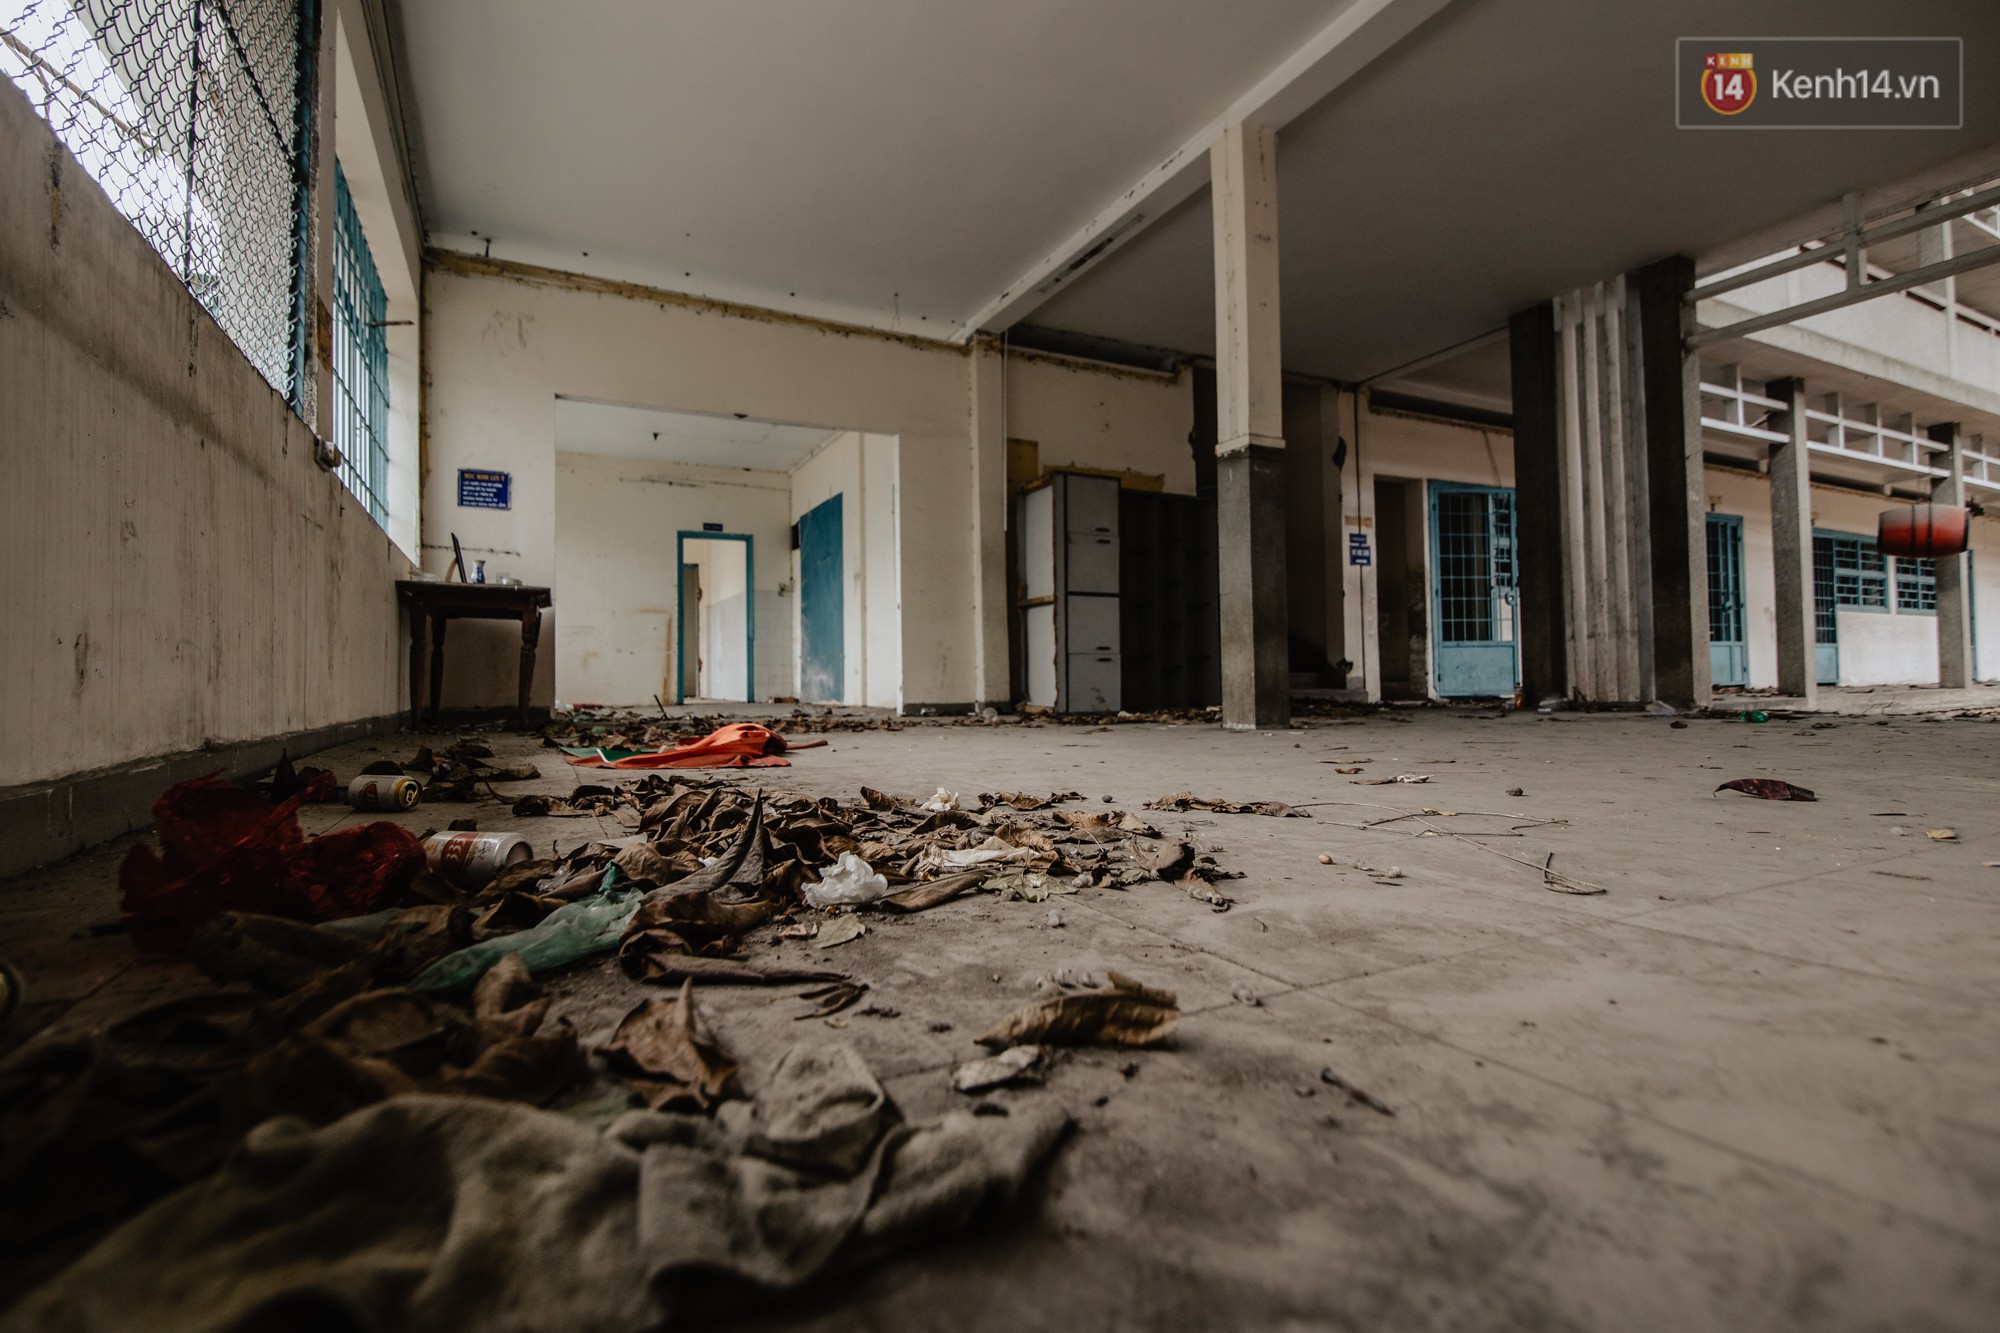 Khung cảnh rợn người bên trong trường học 40 năm tuổi bị bỏ hoang tại Sài Gòn - Ảnh 8.